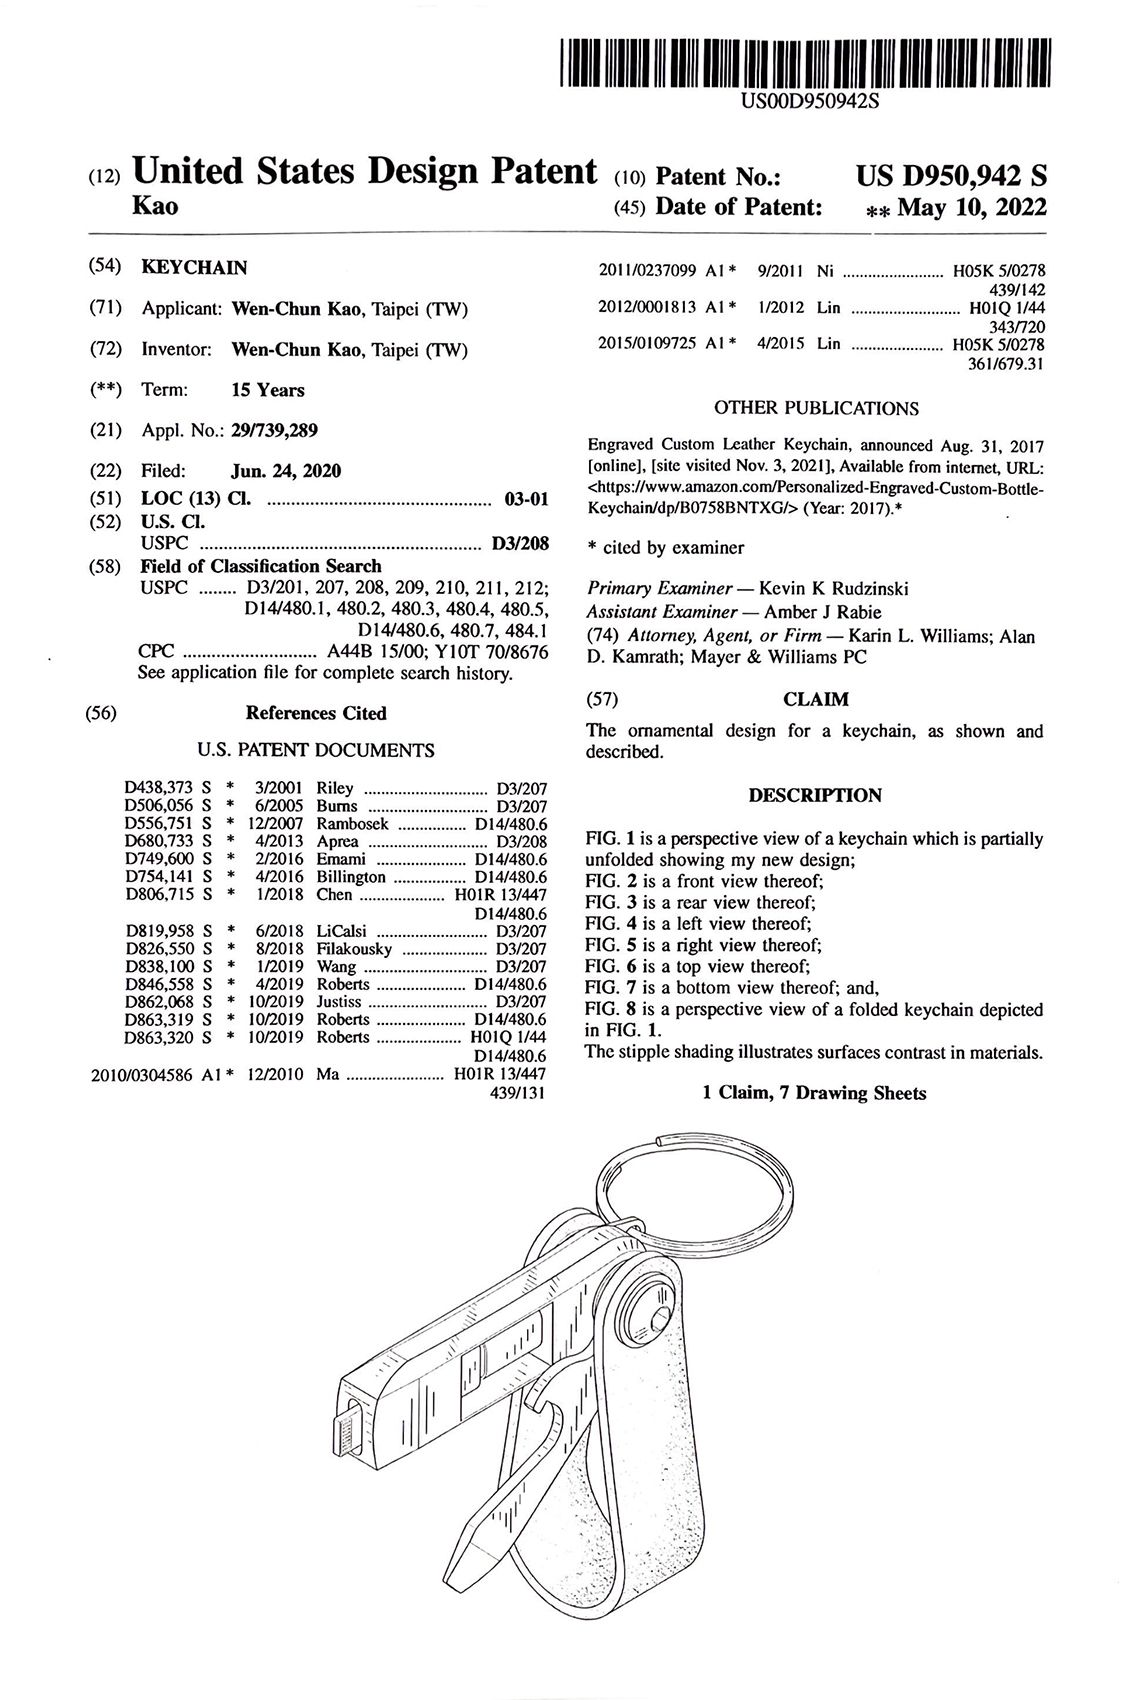 HW2015 US patent.jpg